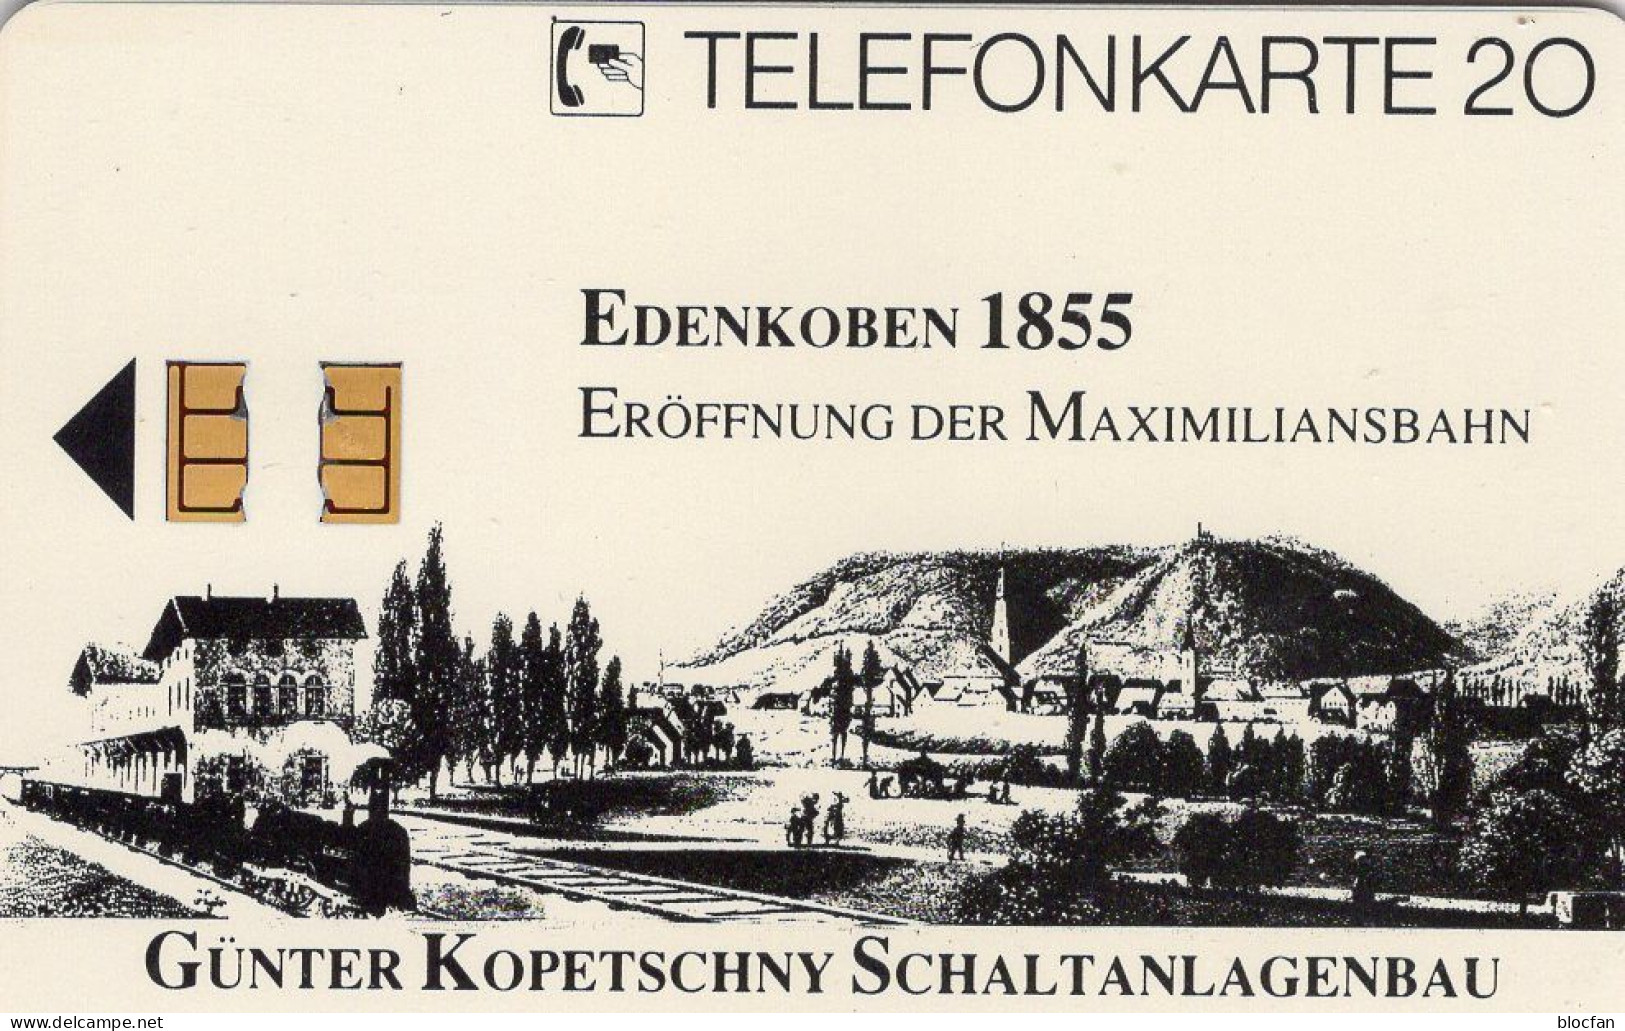 Max.-Bahn TK N * 07/1991 Exempl.200 (K346) ** 160€ Visitenkarte Anlagenbau Kopetschny TC Extra Special Phonecard Germany - V-Series : VIP Y Tarjetas De Visita